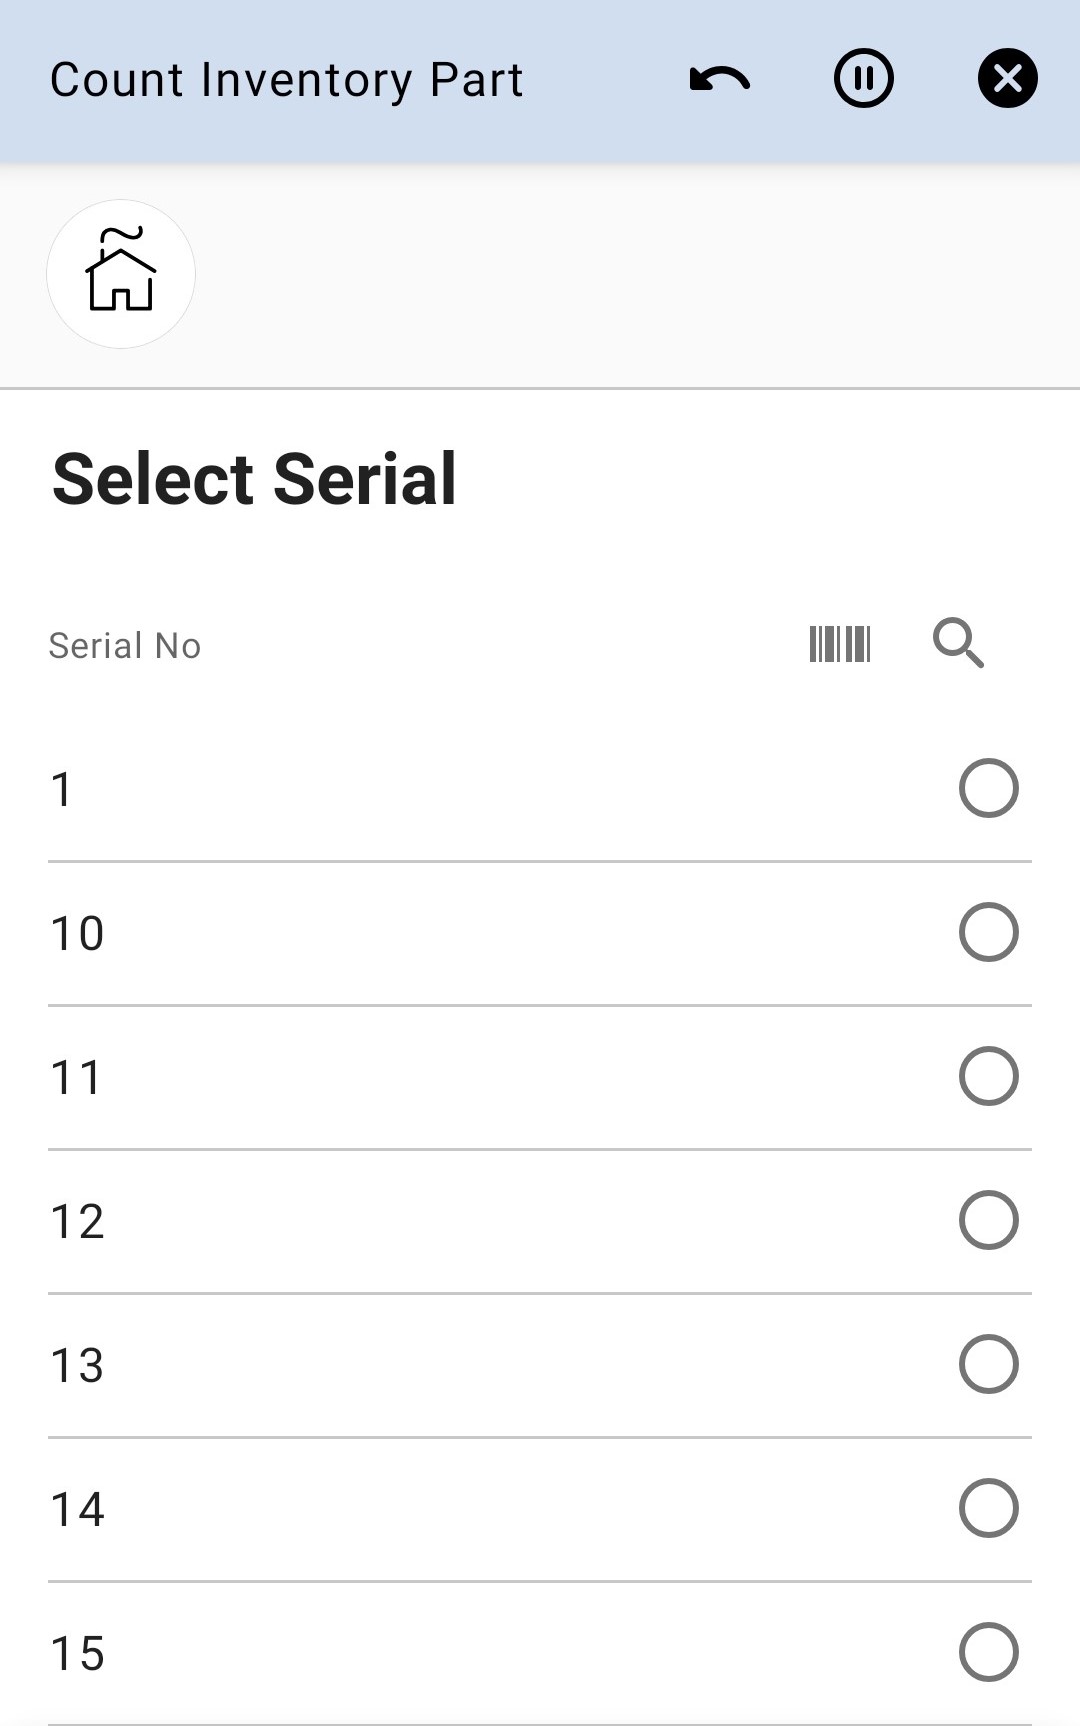 Select Serial